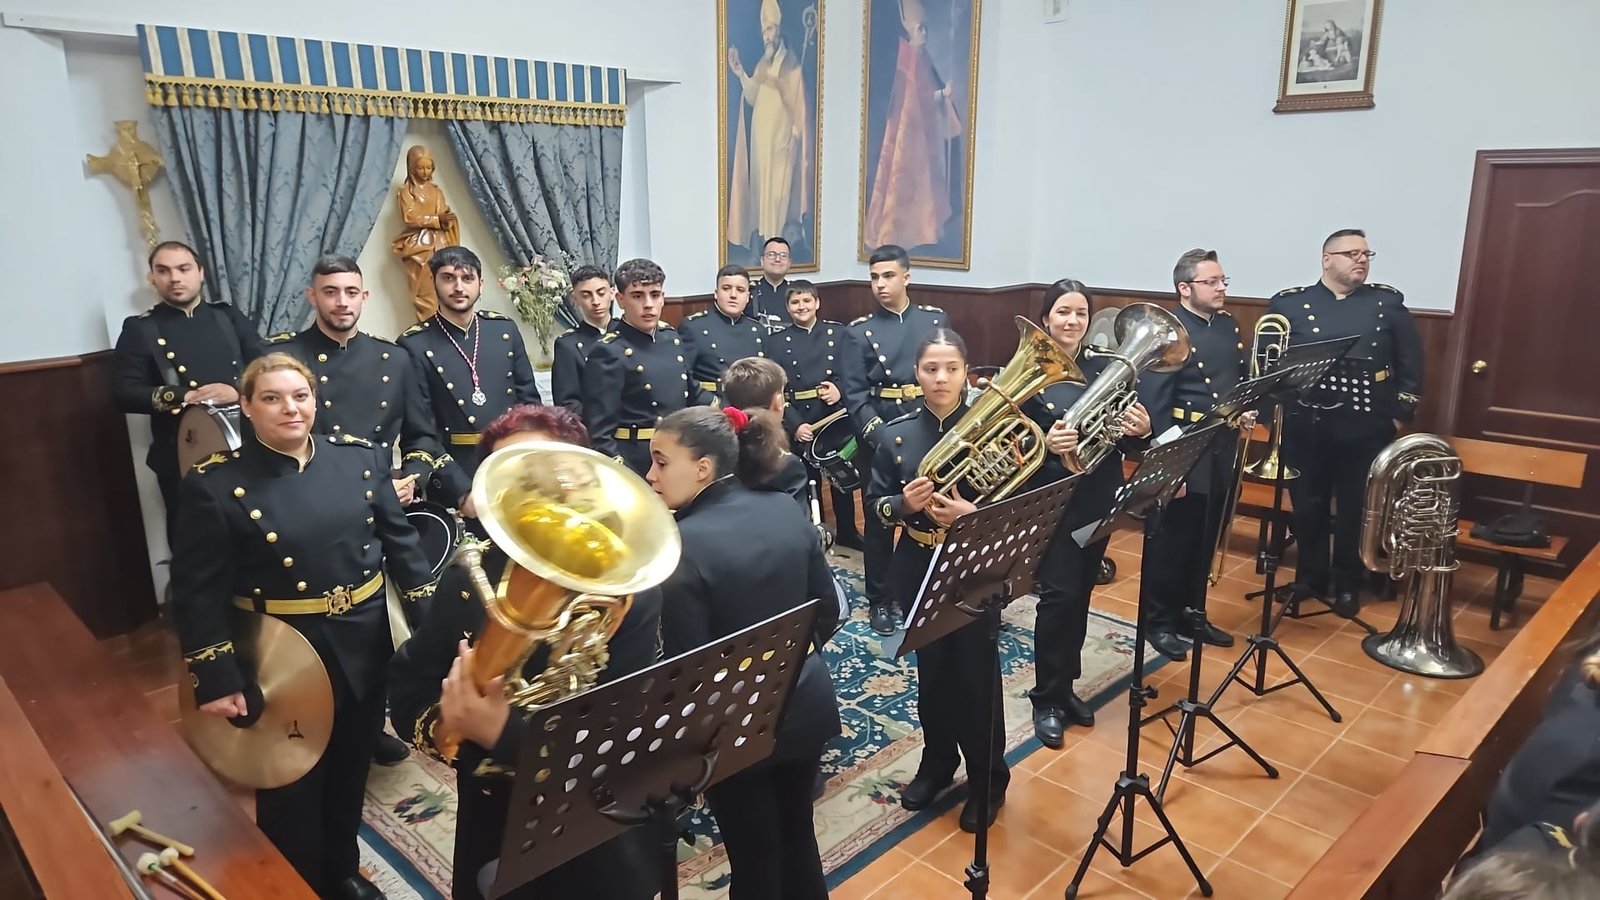 Viernes de Dolores en Ceuta concierto de marchas en 'Santa Teresa'